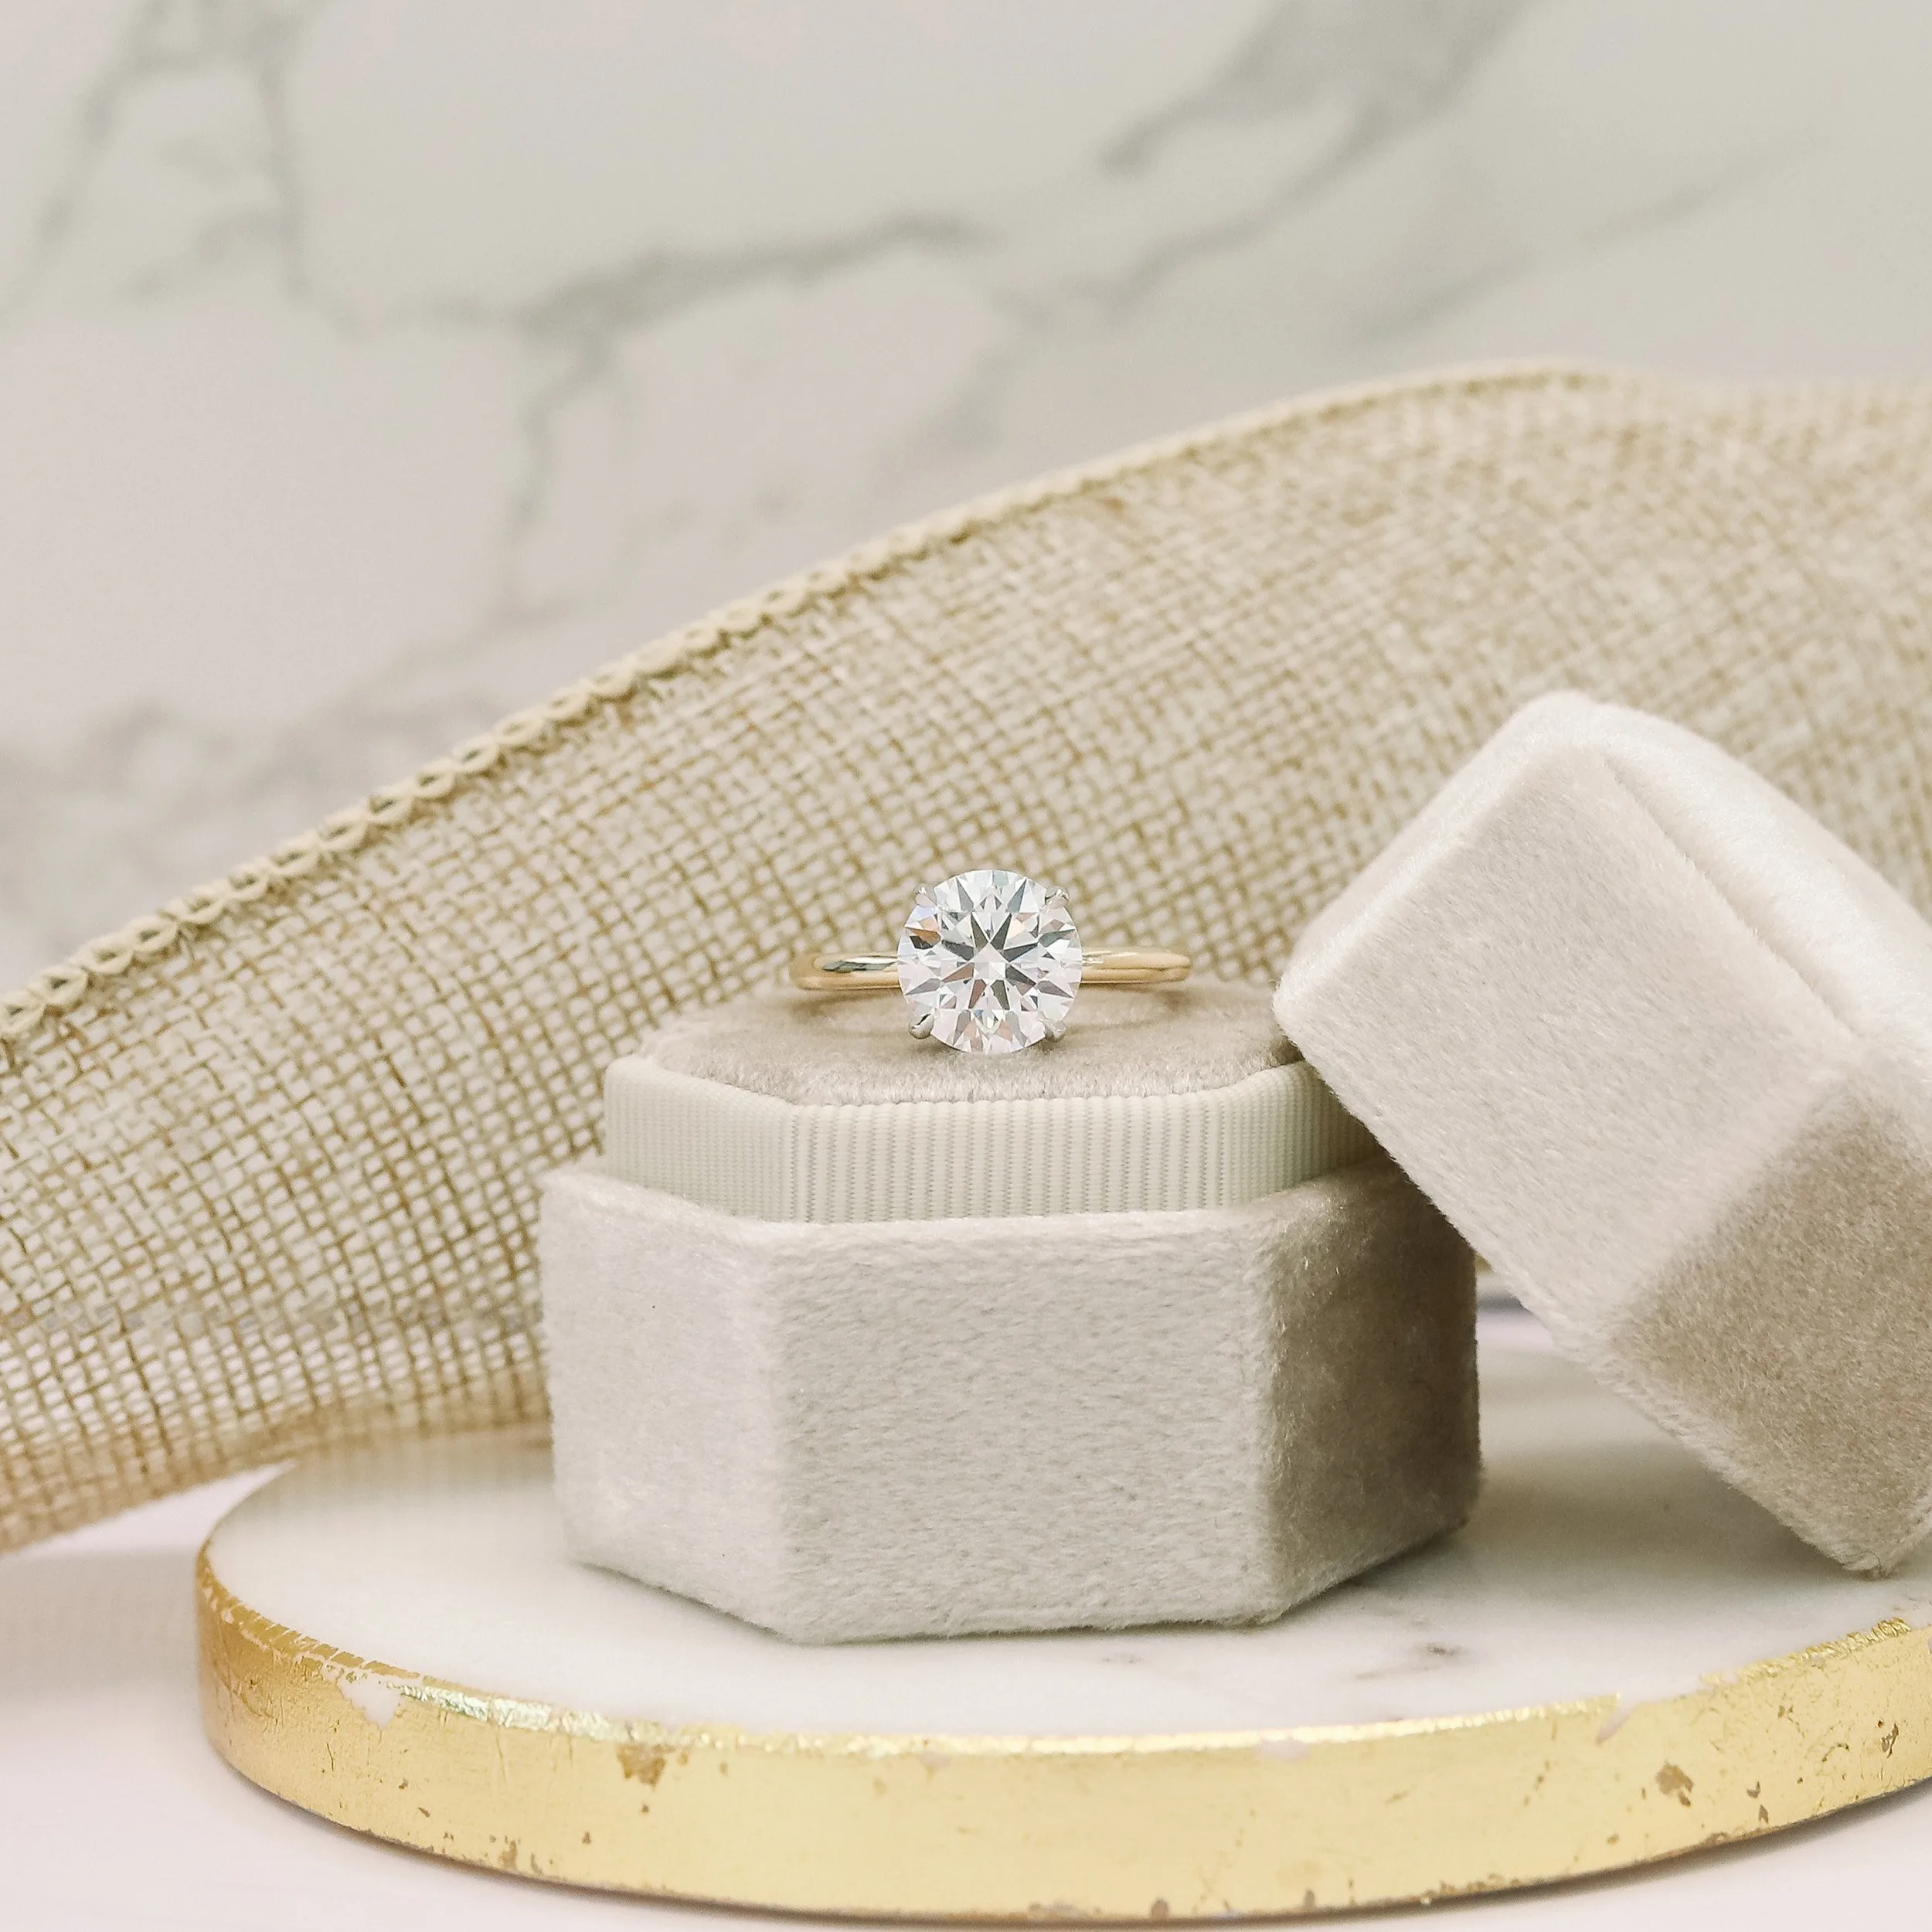 Platinum 3.25 Carat Round Lab Created Diamond Solitaire Engagement Ring Ada Diamonds Design AD066 Floral Background